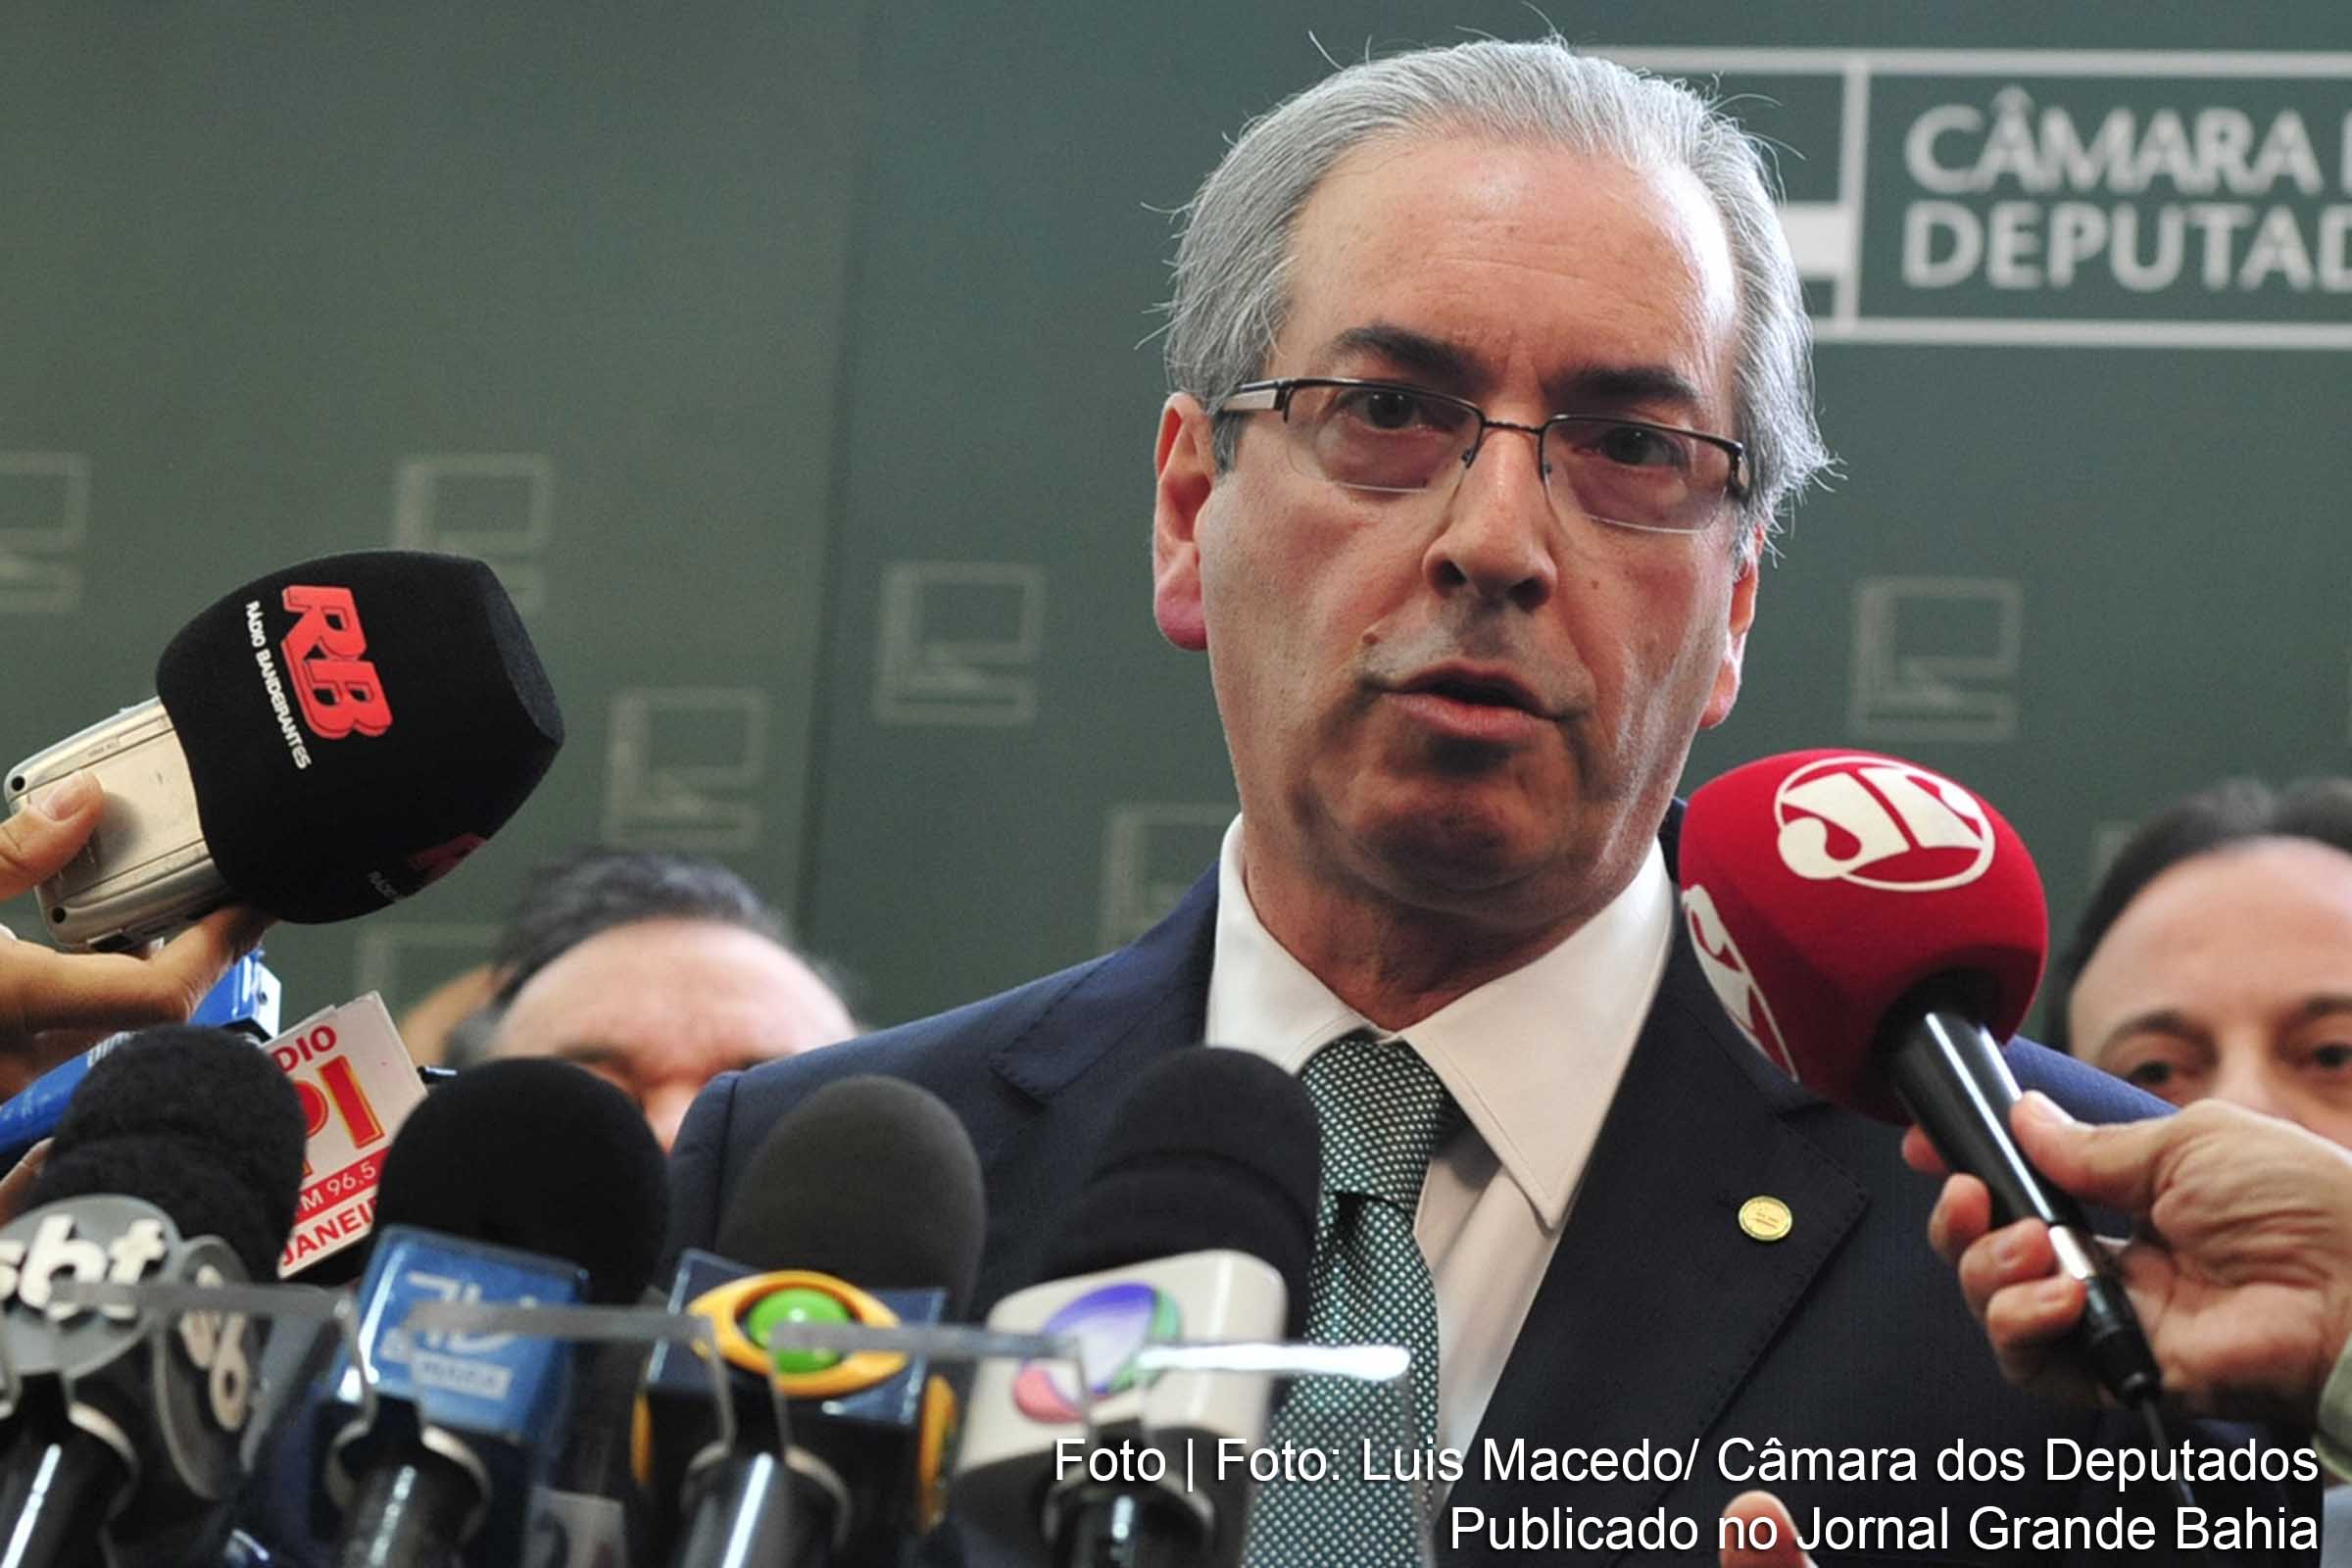 Analistas entendem que a ação do presidente da Câmara Federal, Eduardo Cunha, é decorrente de tentativa de atingir o governo Rousseff, em função do envolvimento dele no Caso Lava Jato.